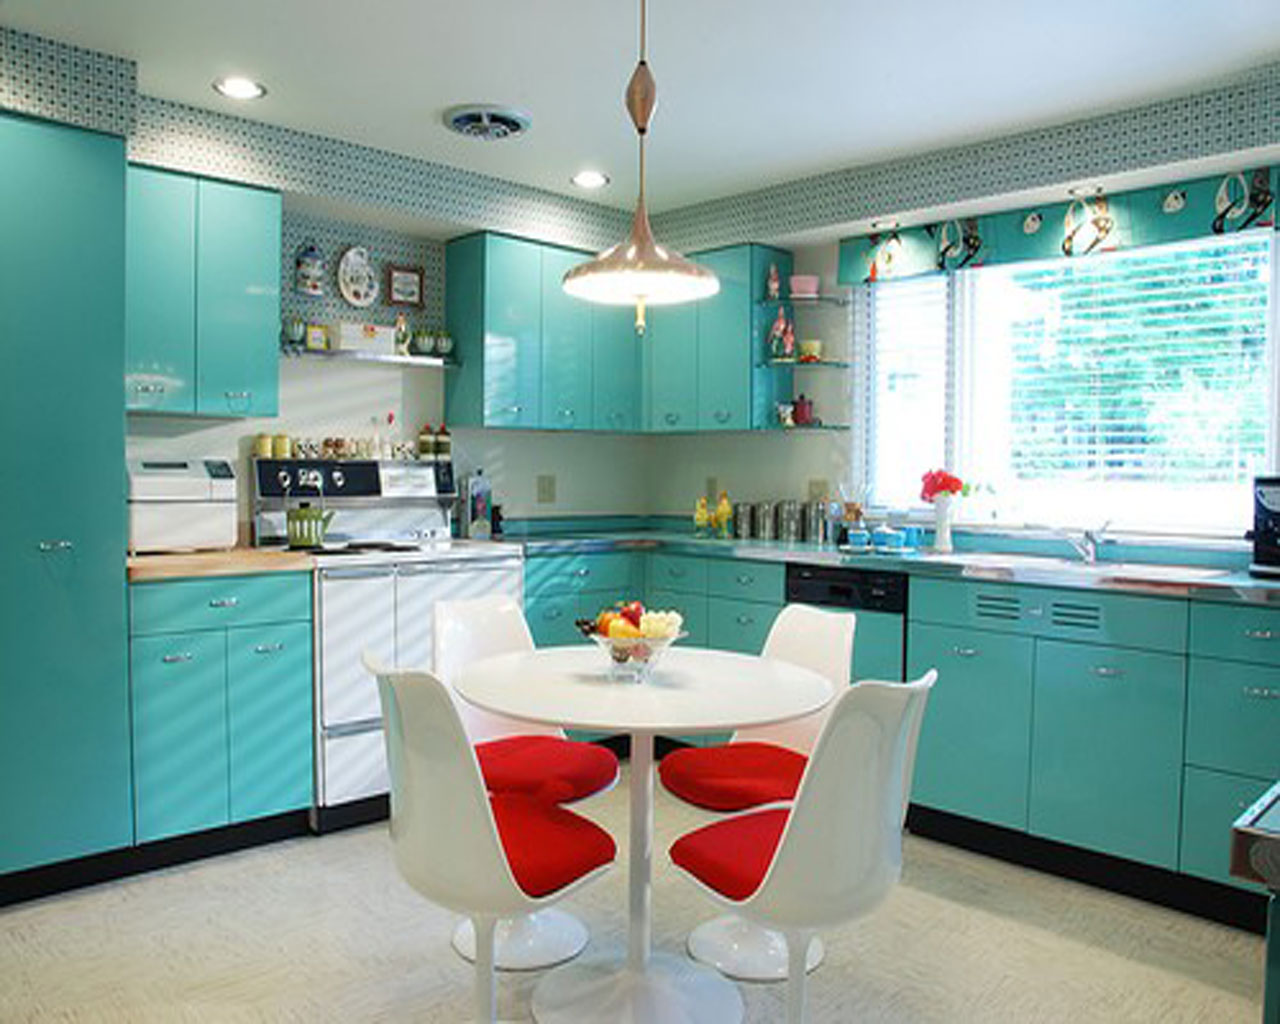 Thiết kế không gian cho nhà bếp của bạn (6)